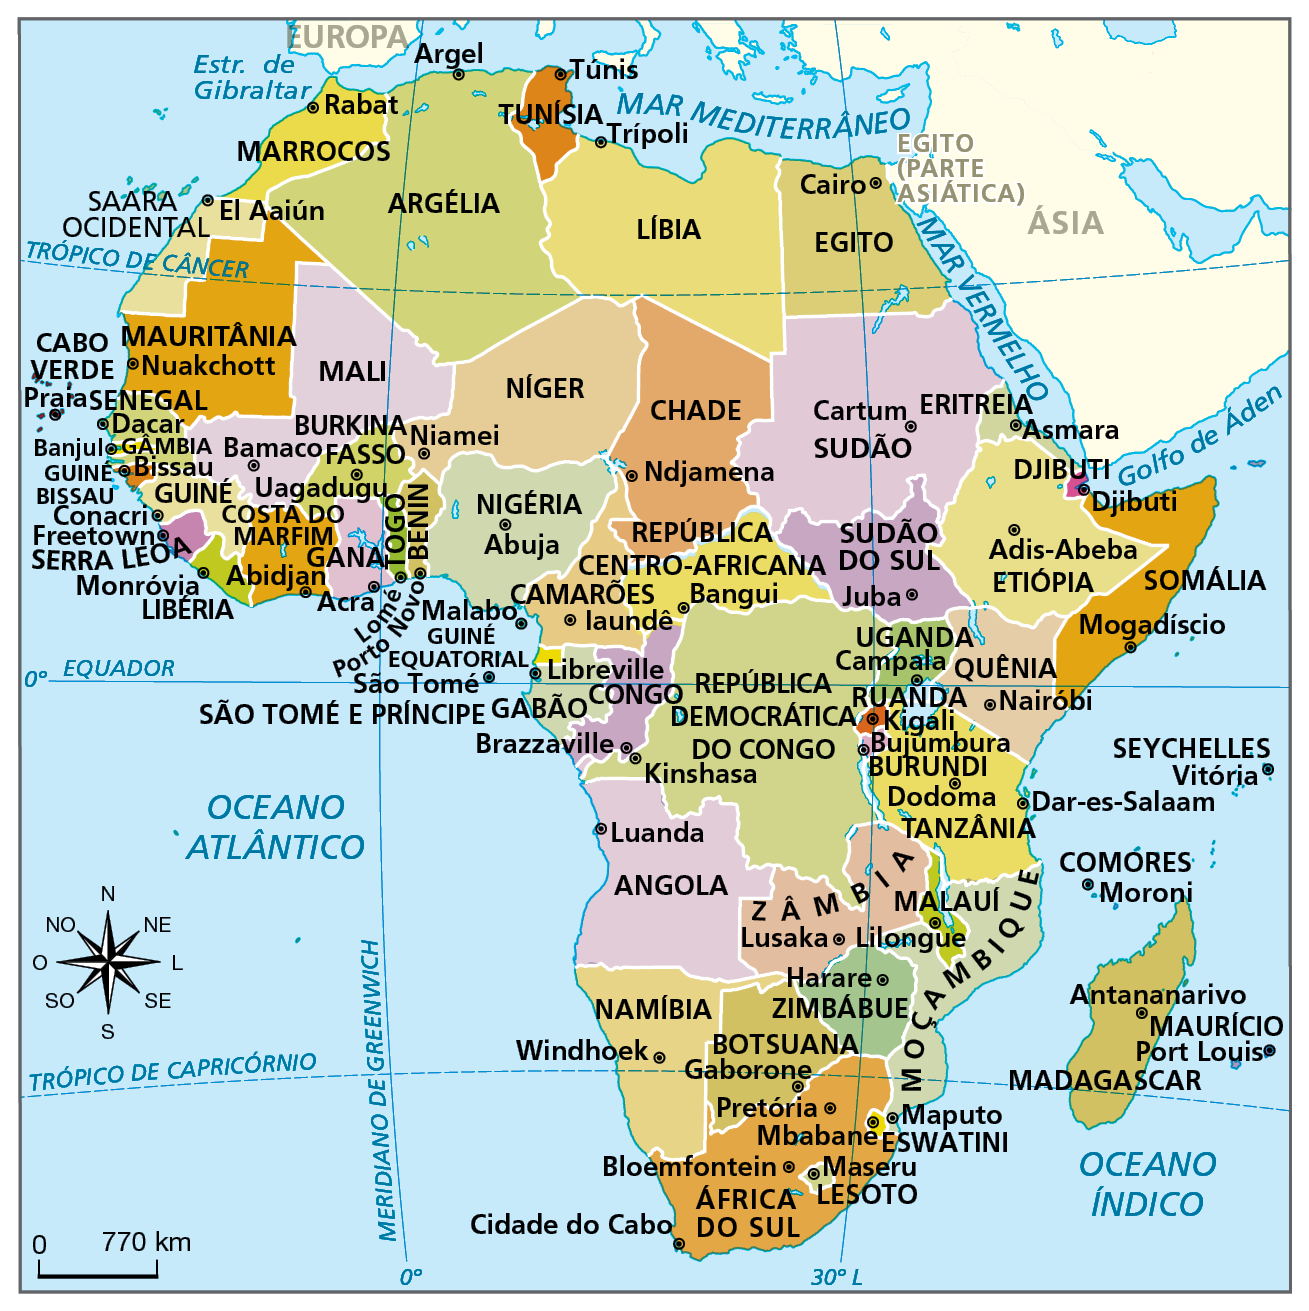 Mapa. África: político. Mapa do continente africano representando a divisão política do país e suas respectivas capitais.   A África é atravessada pelo Trópico de Câncer ao norte (nos países Saara Ocidental, Mauritânia, Mali, Argélia, Líbia e Egito), Equador ao centro (nos países Gabão, Congo, República Democrática do Congo, Uganda, Quênia e Somália) e Trópico de Capricórnio ao sul (países Namíbia, Botsuana, África do Sul, Moçambique e Madagascar). O meridiano de Greenwich atravessa a porção oeste do continente (países Argélia, Mali, Burkina Fasso e a faixa de fronteira entre Gana e Togo). Ao norte, faz fronteira com a Europa e a nordeste com a Ásia. Tem o Mar Mediterrâneo ao norte, o Mar Vermelho a nordeste, Oceano Índico a leste e Oceano Atlântico a oeste. Países e suas capitais do sul em direção ao norte. África do Sul (Cidade do Cabo, Bloemfontein e Pretória)  Lesoto (Maseru)  Eswatini (Mbabane) Moçambique (Maputo) Botsuana (Gaborone) Namíbia (Windhoek) Angola (Luanda)  Zimbábue (Harare) Malauí (Lilongue) Zâmbia (Lusaka) Madagascar (Antananarivo) Maurício (Port Louis) Comores (Moroni) Seychelles (Vitória) Tanzânia (Dodoma) República Democrática do Congo (Kinshasa) Congo (Brazzaville) Gabão (Libreville) Camarões (Iaundê) São Tomé e príncipe (São Tomé) Burundi (Bujumbura) Ruanda (Kigali) Uganda (Campala) Quênia (Nairobi) Somália (Mogadíscio) Etiópia (Adis-Abeba) Djibuti (Djibuti) Sudão do Sul (Juba) República Centro-Africana (Bangui) Nigéria (Abuja) Benin (Porto Novo) Togo (lomé) Gana (Acra) Costa do Marfim (Abidjan) Libéria (Monróvia) Serra Leoa (Freetown) Guiné (Conacri) Guiné Bissau (Bissau) Gâmbia (Banjul) Senegal (Dacar) Cabo Verde (Praia) Burkina Fasso (Uagadugu) Mali (Bamaco) Mauritânia (Nuakchott) Níger (Niamei) Chade (Ndjamena) Sudão (Cartum)  Eritreia (Asmarra) Egito (cairo) Líbia (Trípoli) Tunísia (Túnis) Argélia (Argel) Marrocos (Rabat) Saara Ocidental (El Aaiún) À esquerda, rosa dos ventos e escala de 0 a 770 quilômetros.